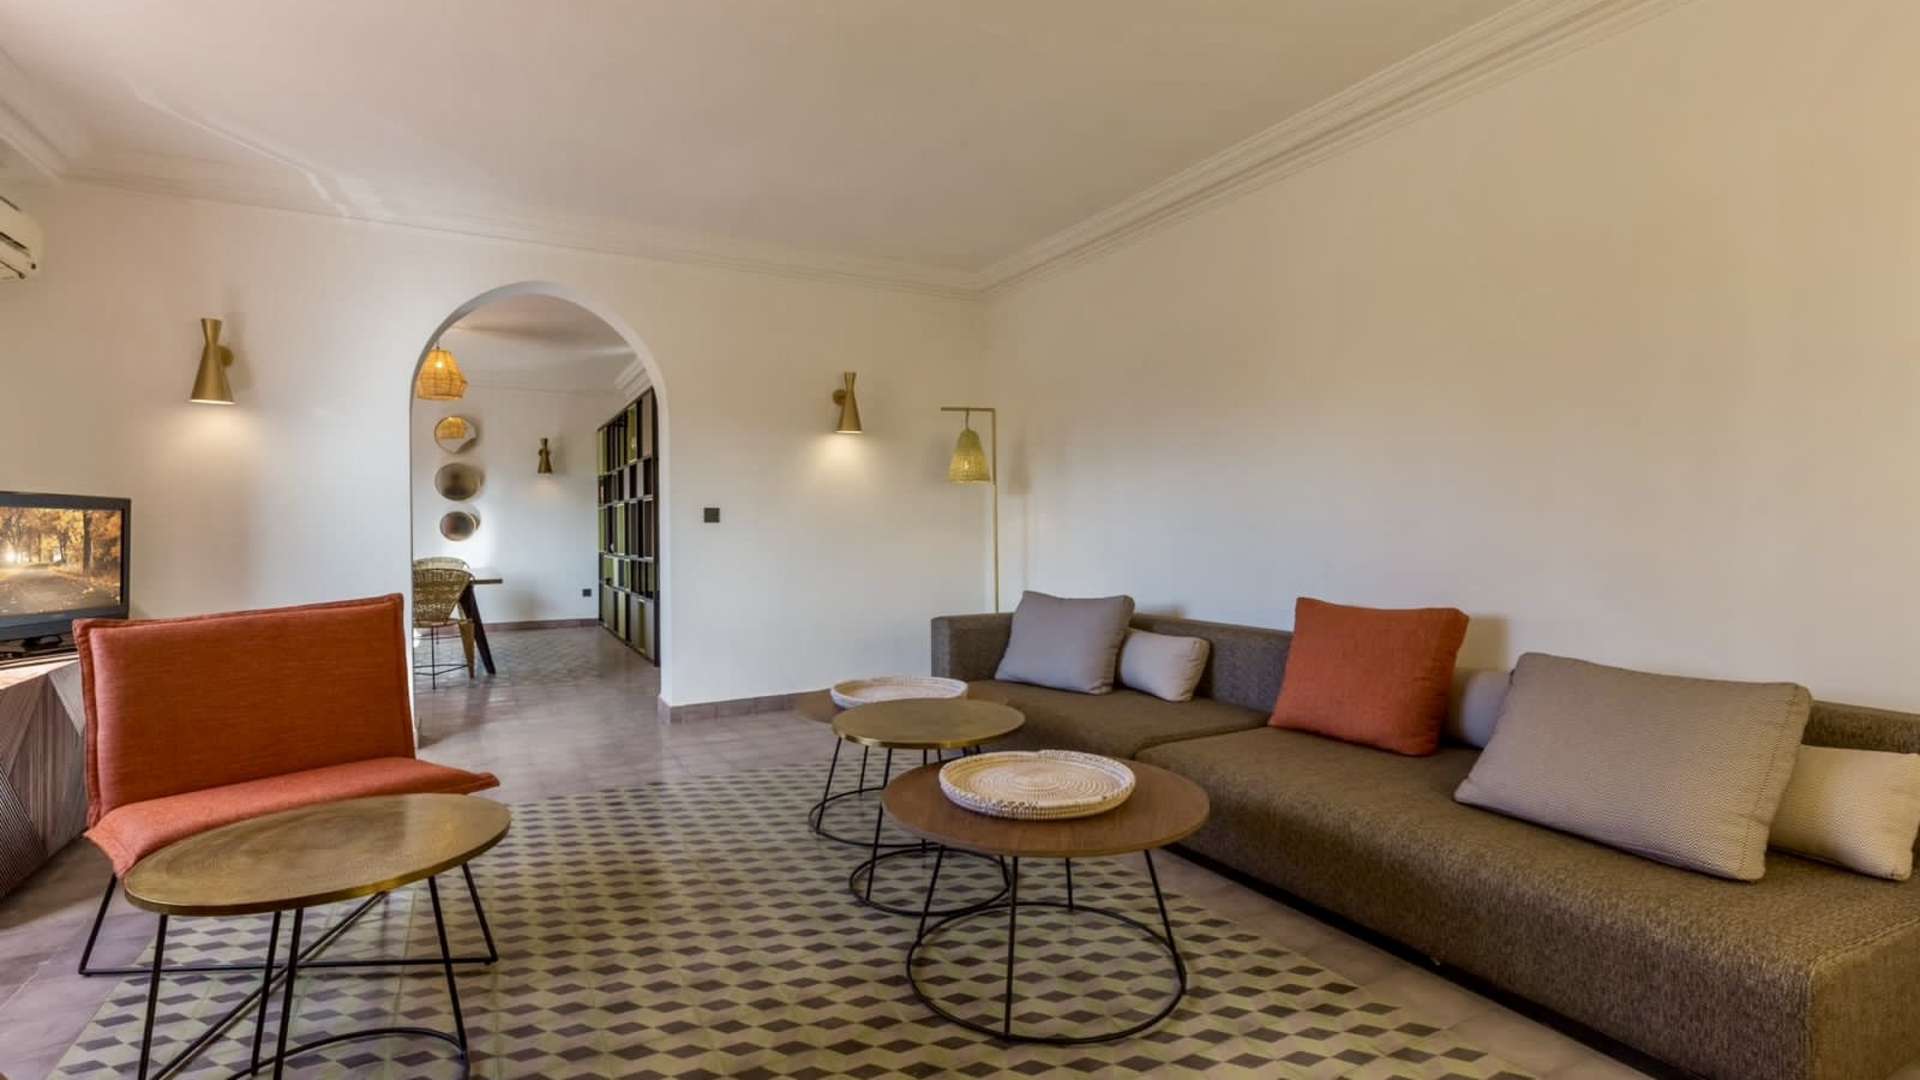 Vente,Appartement,Offre de Vente - Appartement de 3 Chambres Salon à Proximité des Jardins de Majorelles, Marrakech,Marrakech,Majorelles